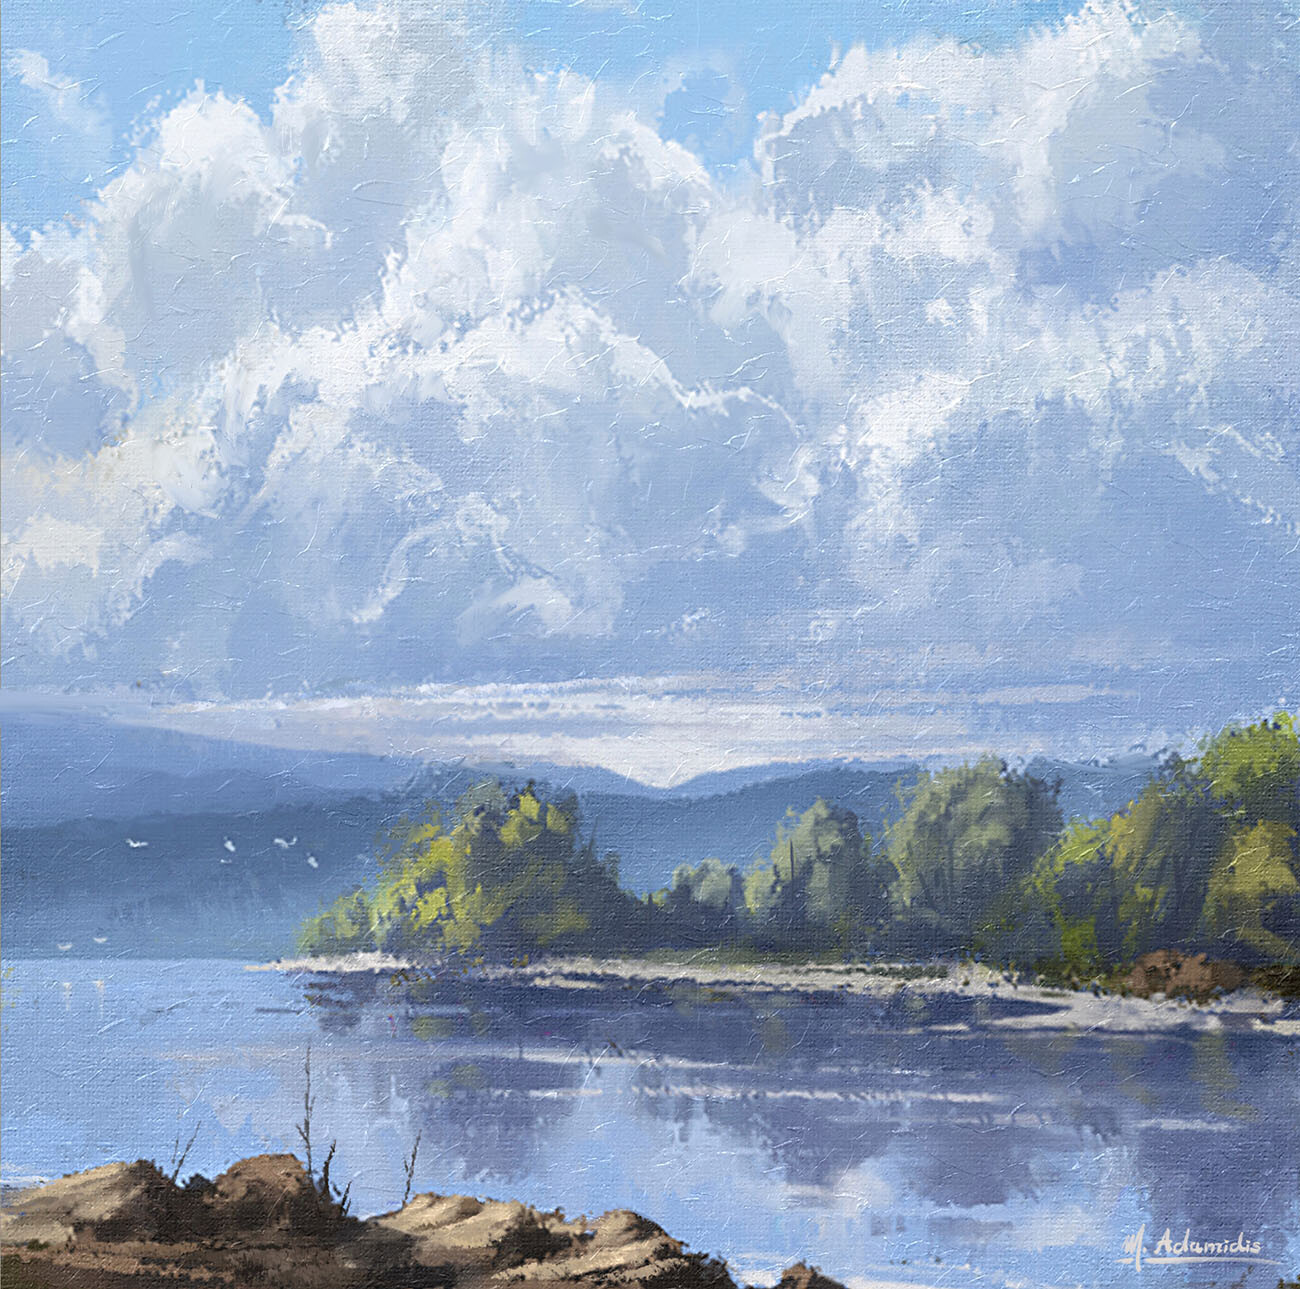 Artwork "Shimmering Blue Lake" - Digital Landscape Painting